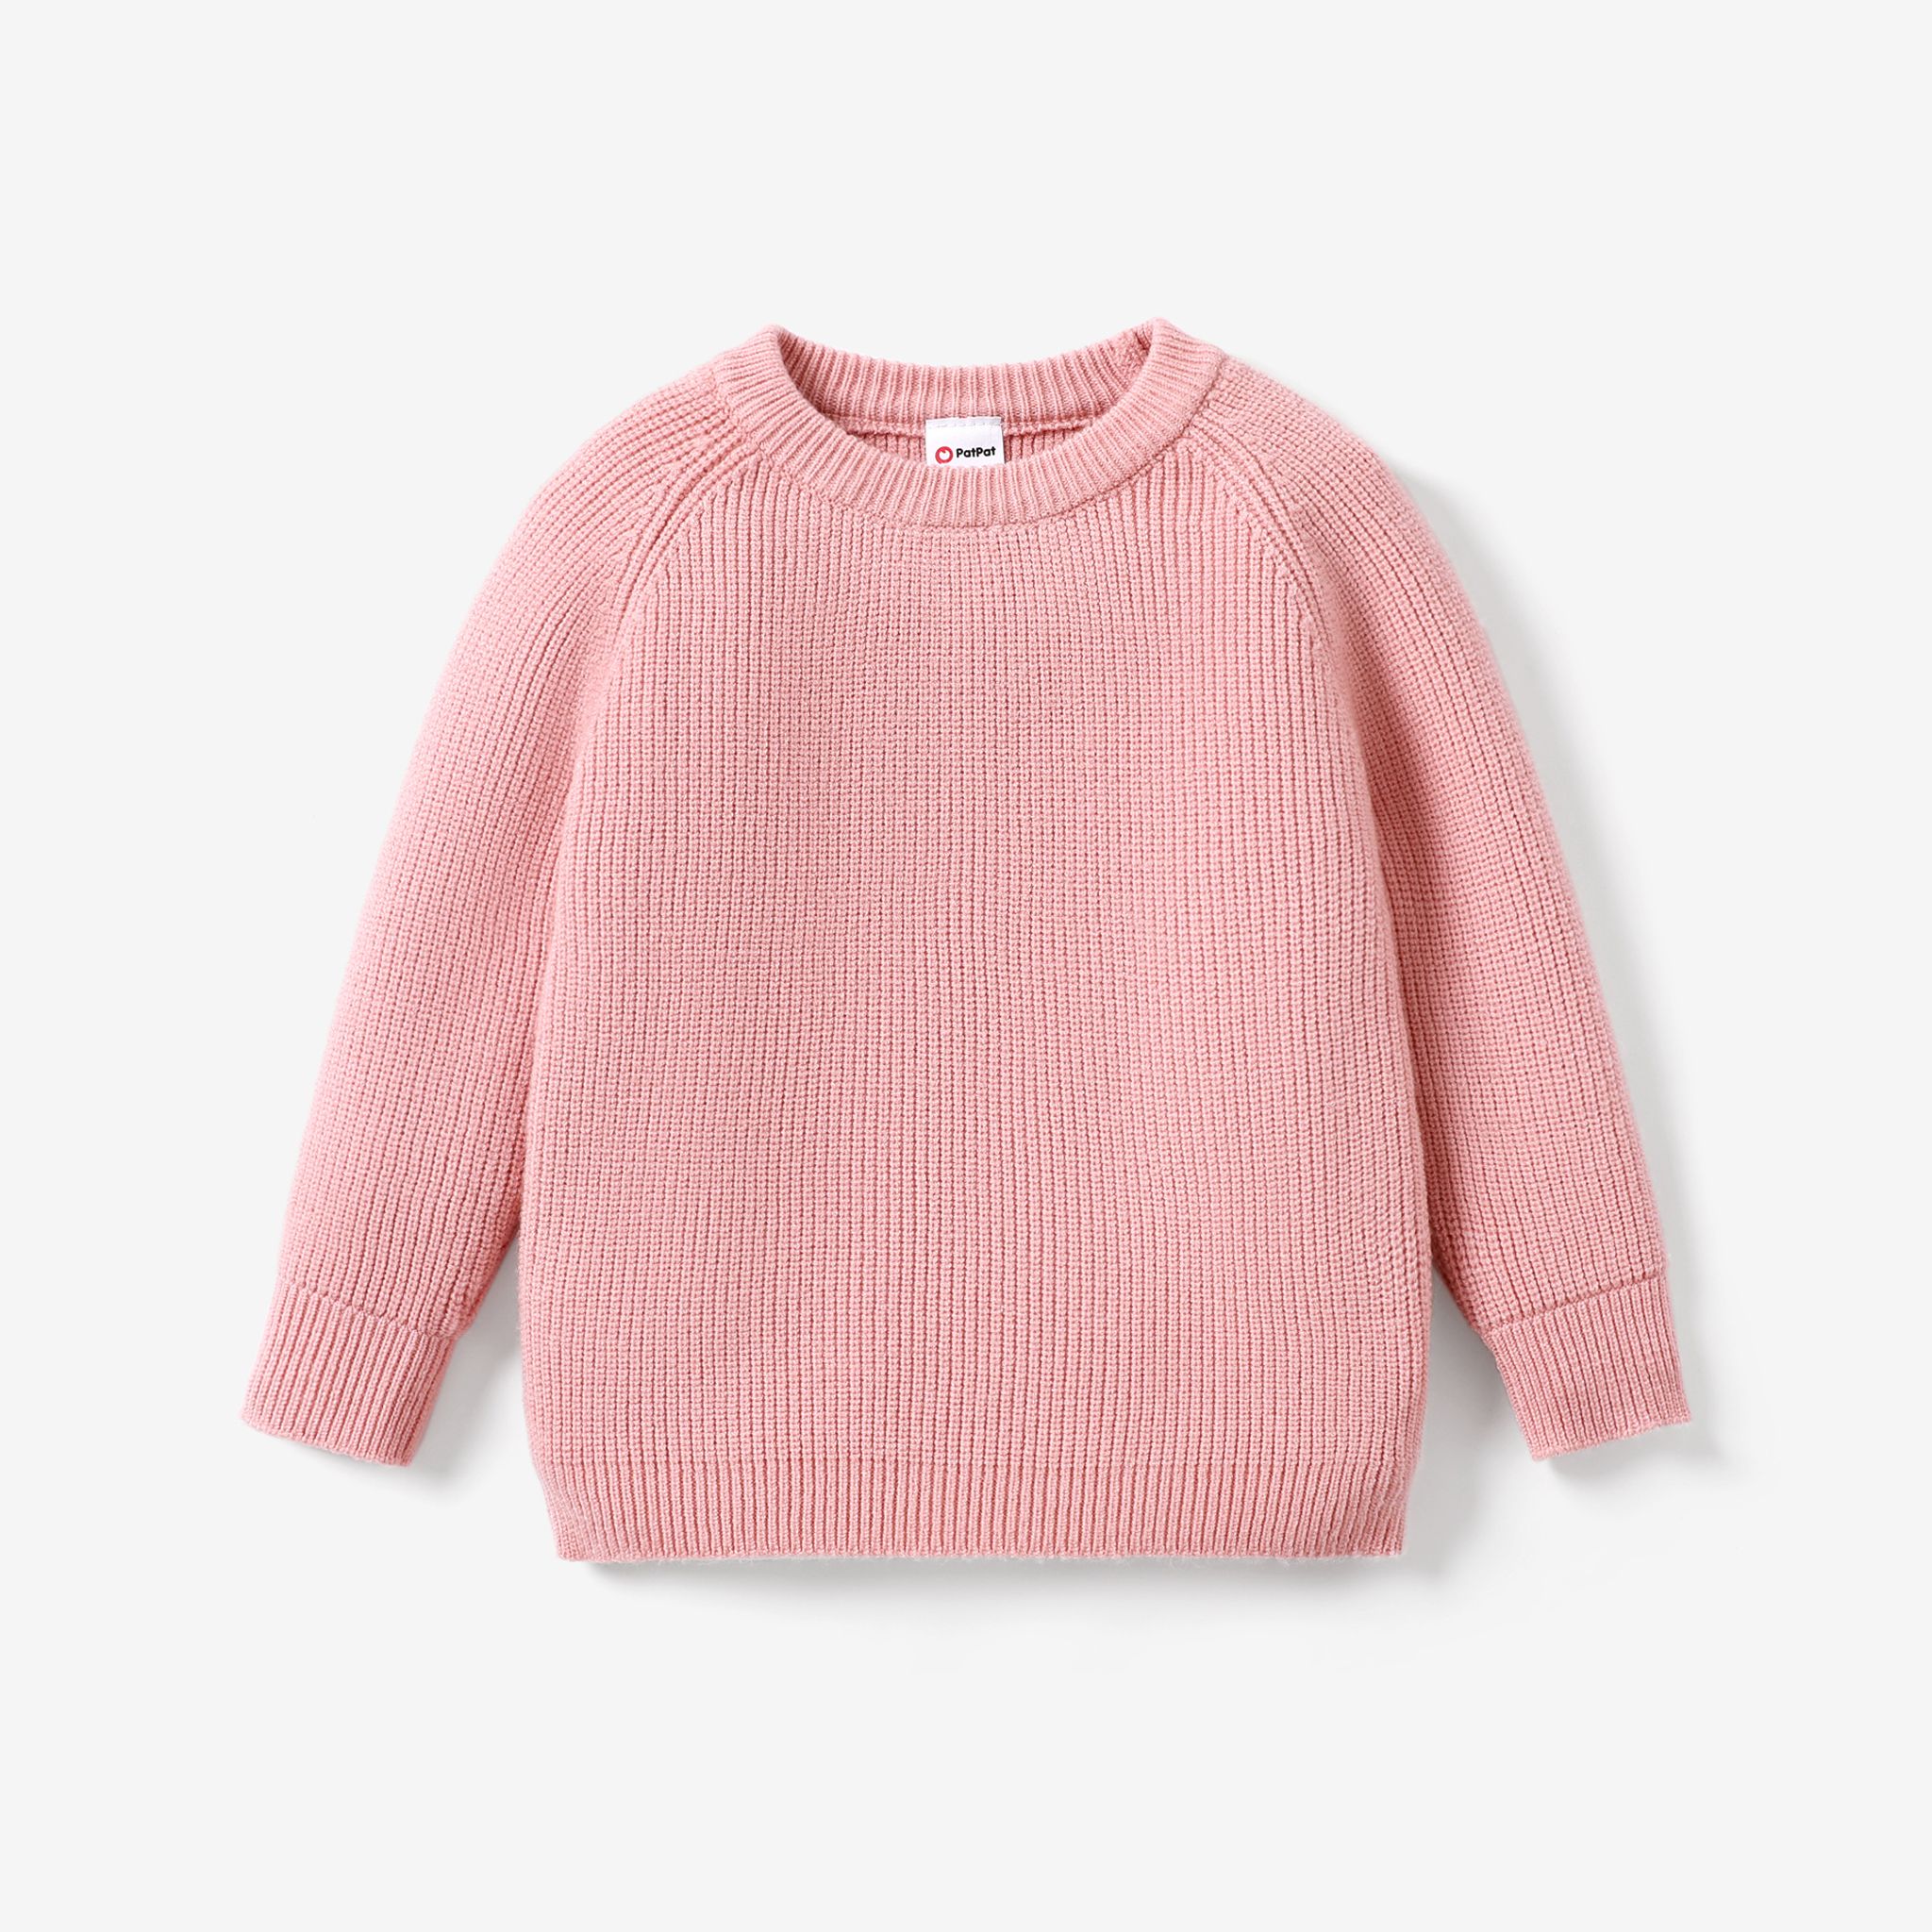 Toddler/Kid Girl/Boy Solid Inserted Shoulder Design Sweater